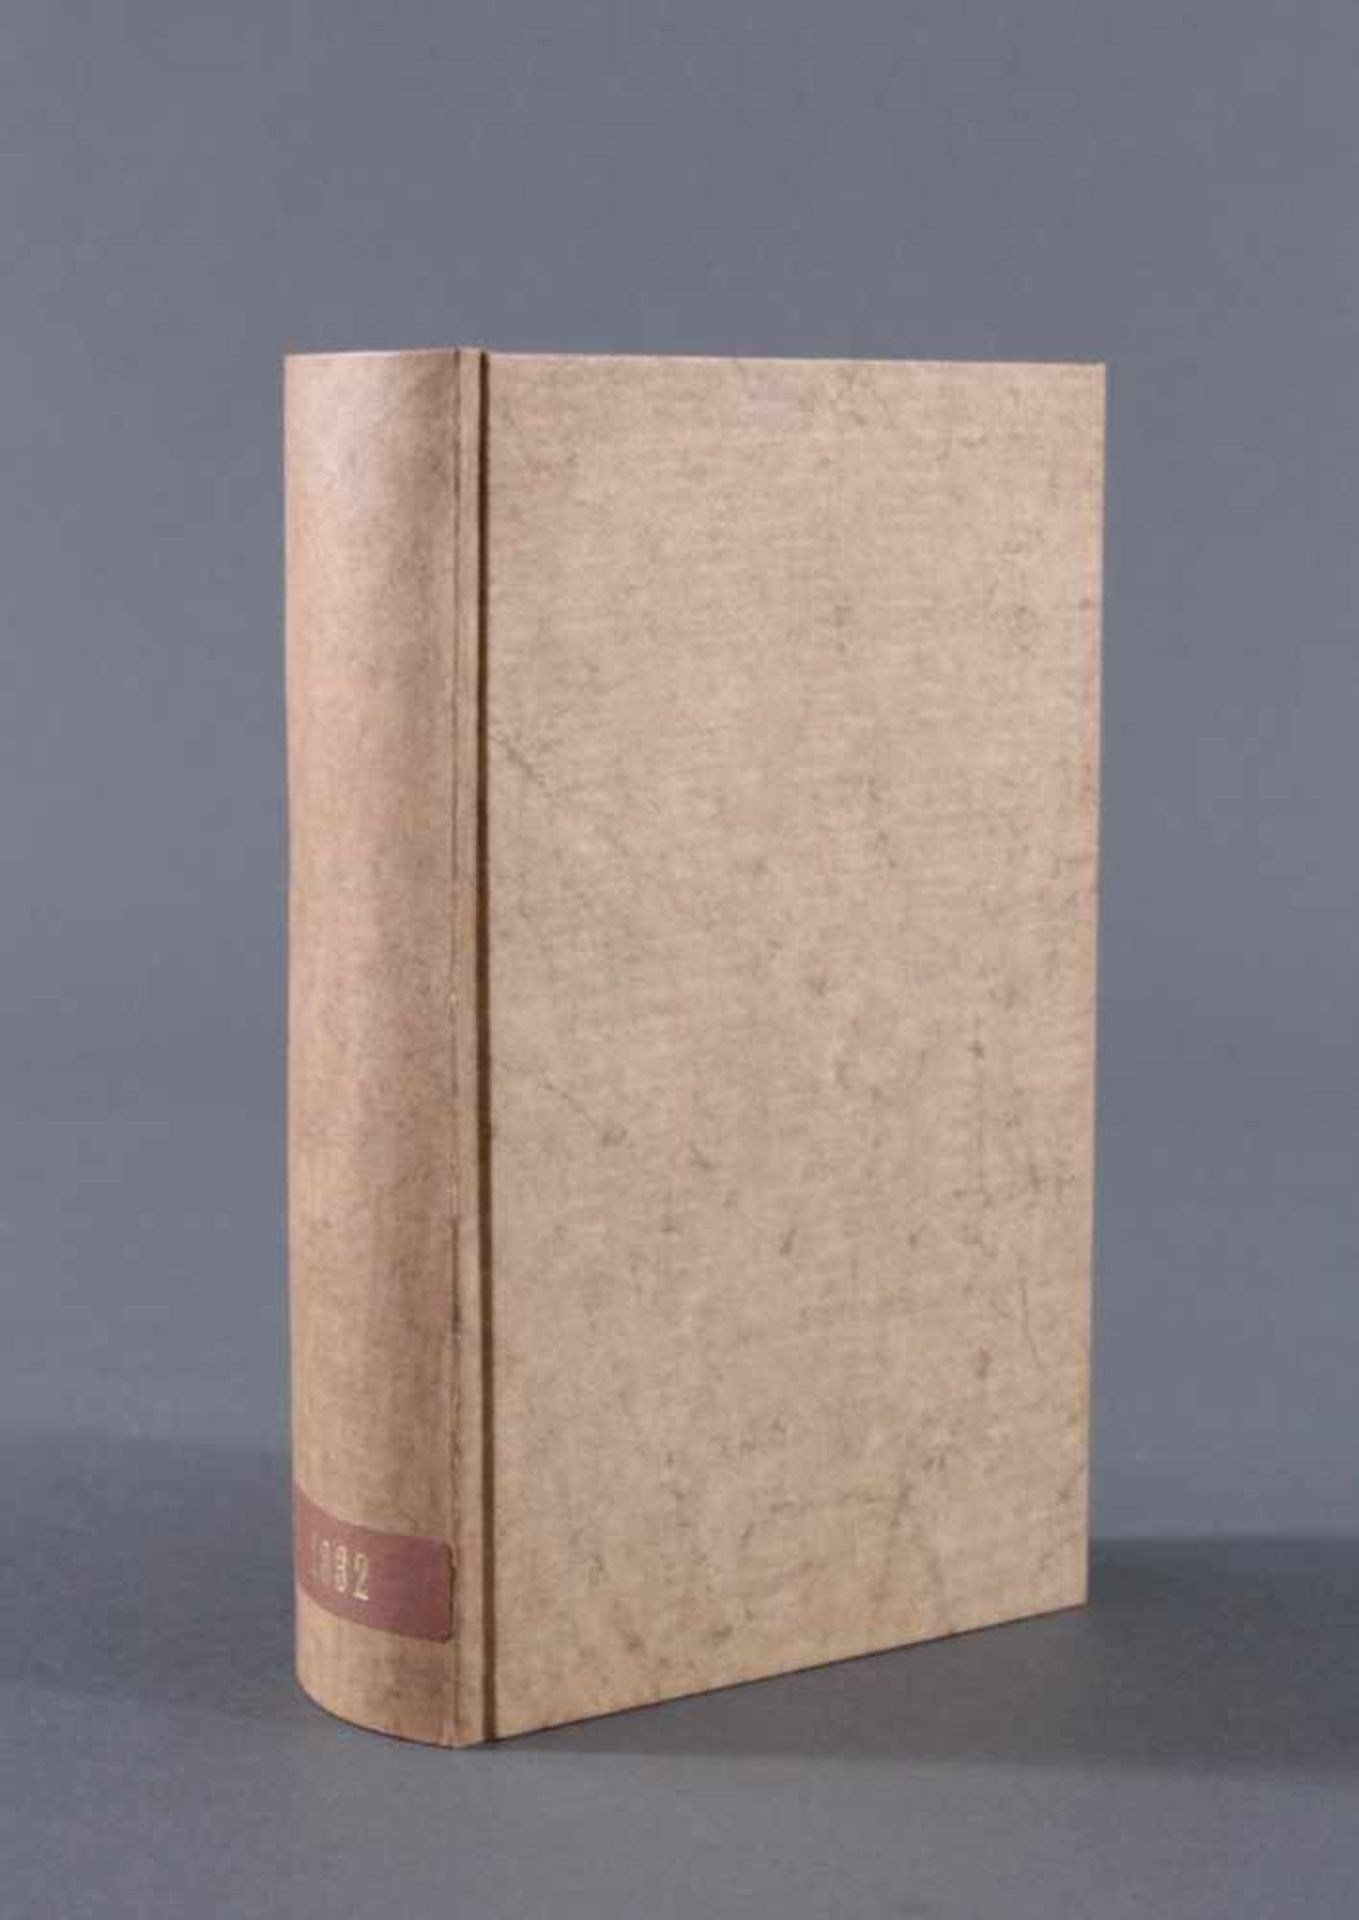 Wörterbuch von 1832, Latein, Deutsch, Französisch und TschechischBuch wurde restauriert und der